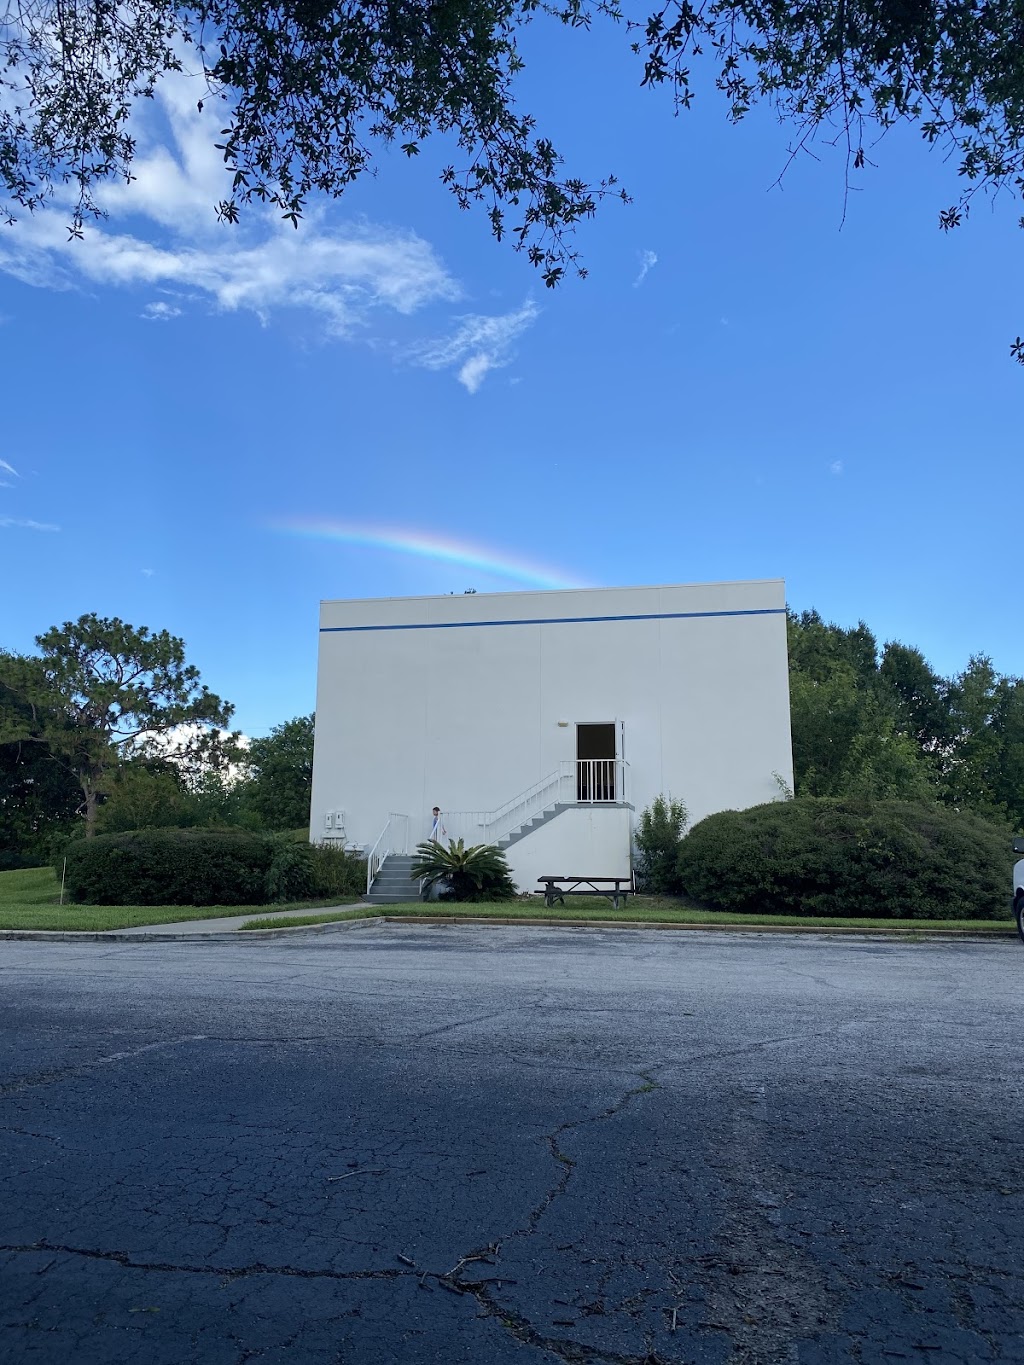 SnowBall Church Orlando | 5950 Lakehurst Dr, Orlando, FL 32819 | Phone: (407) 861-1675